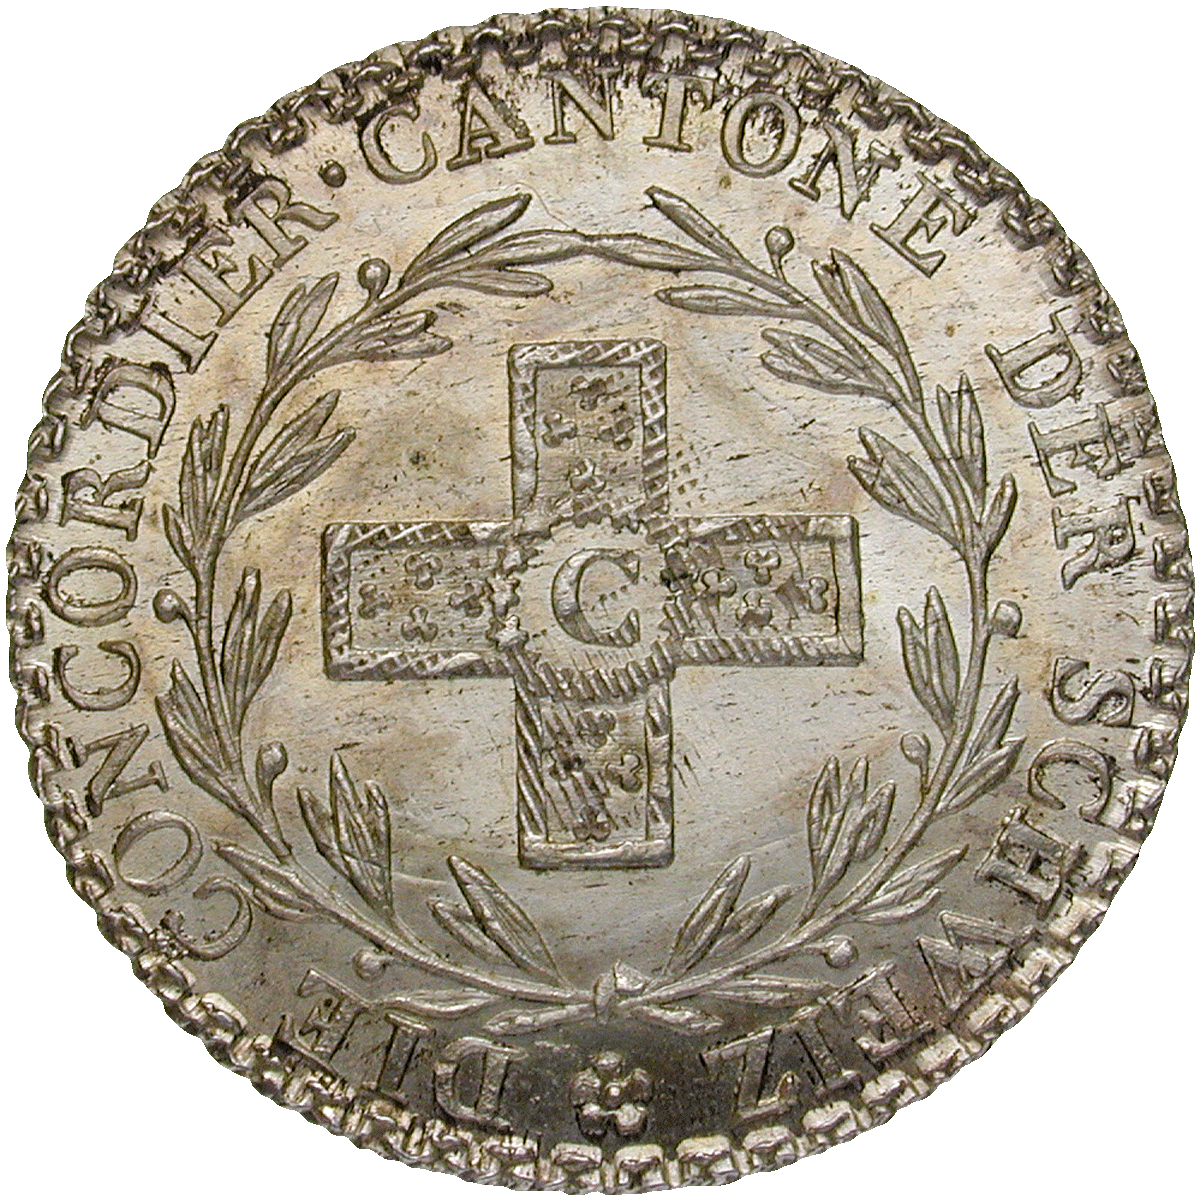 Kanton Aargau, 5 Konkordatsbatzen 1826 (reverse)